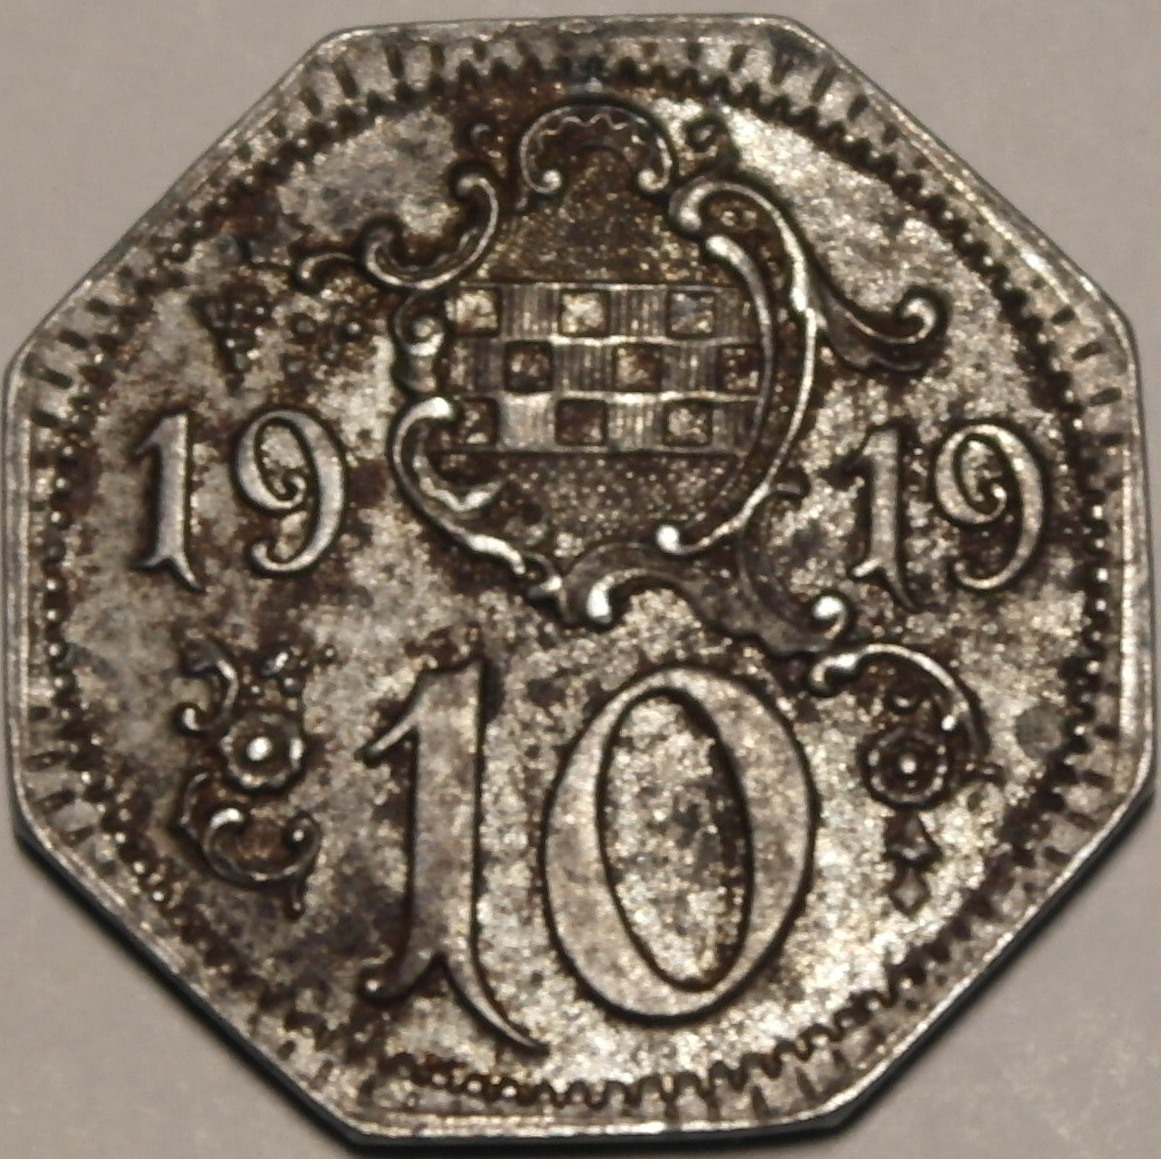 10 Pfennig Hamm 1919 a - Kopie.JPG